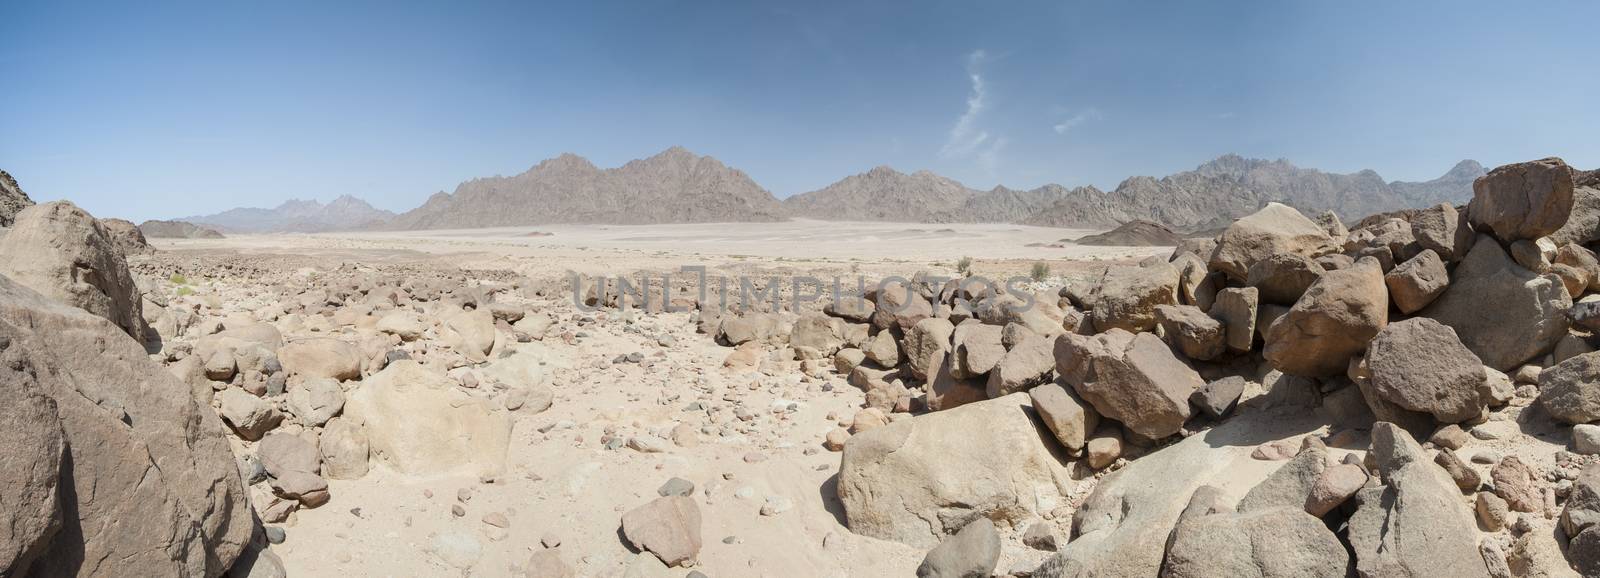 Rocky mountain slope in a desert by paulvinten